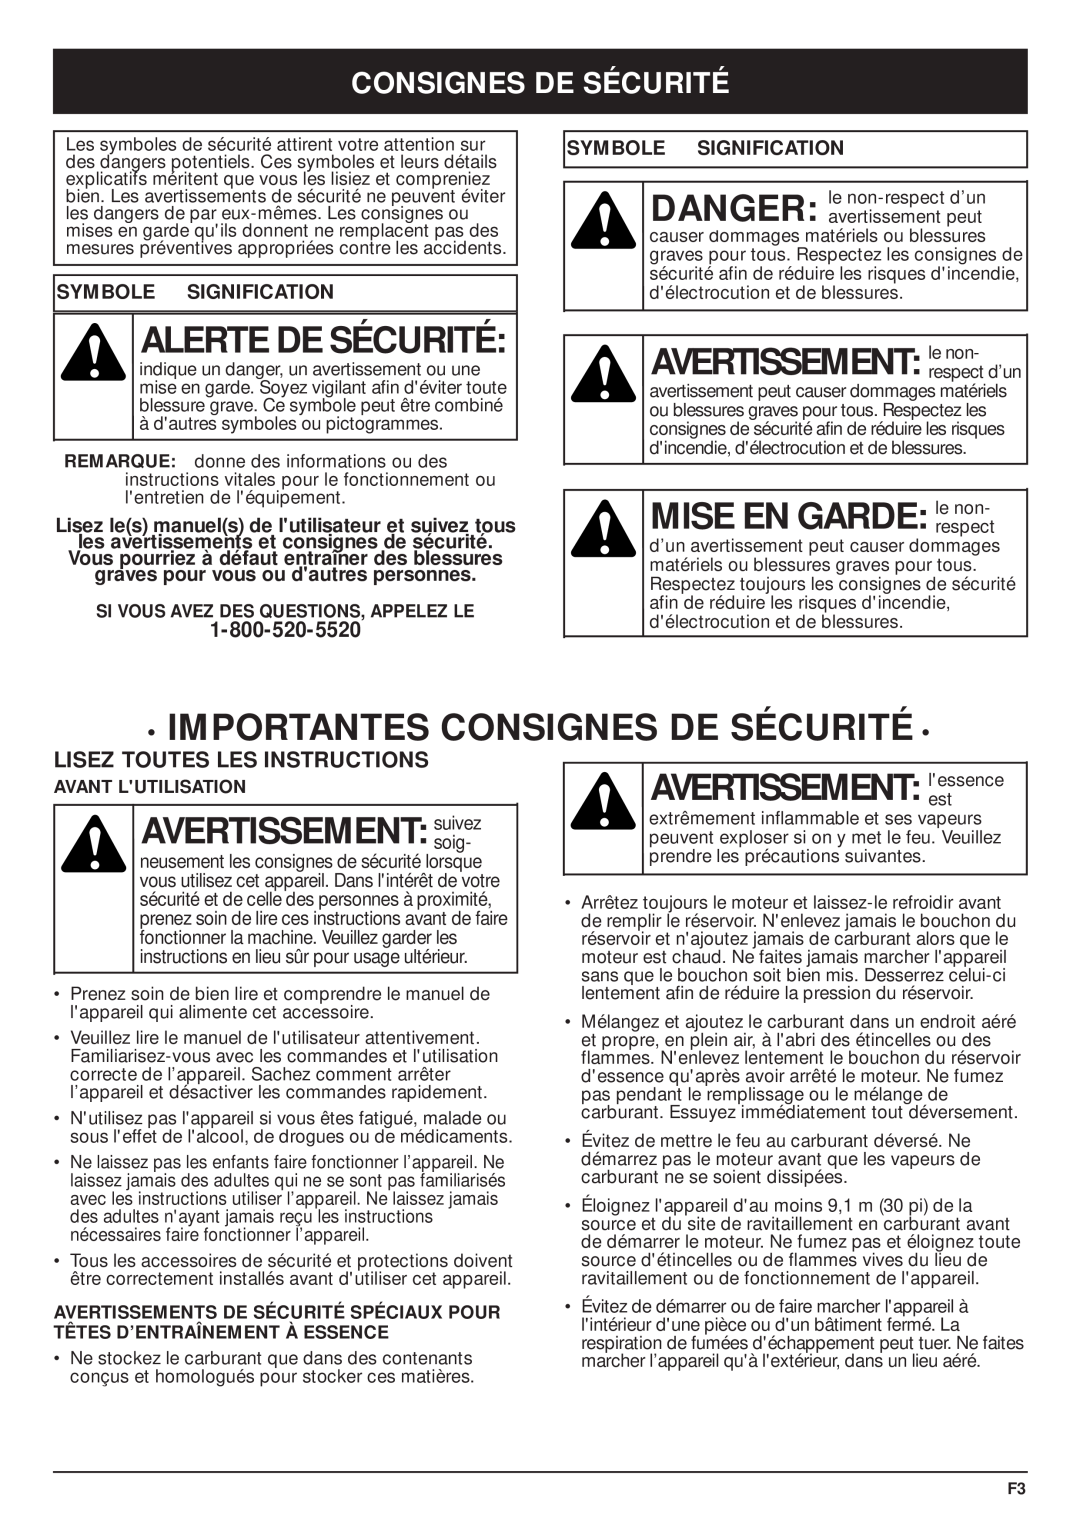 MTD TBPS manual Alerte De Sécurité, AVERTISSEMENT le non, MISE EN GARDE le non, Importantes Consignes De Sécurité, soig 